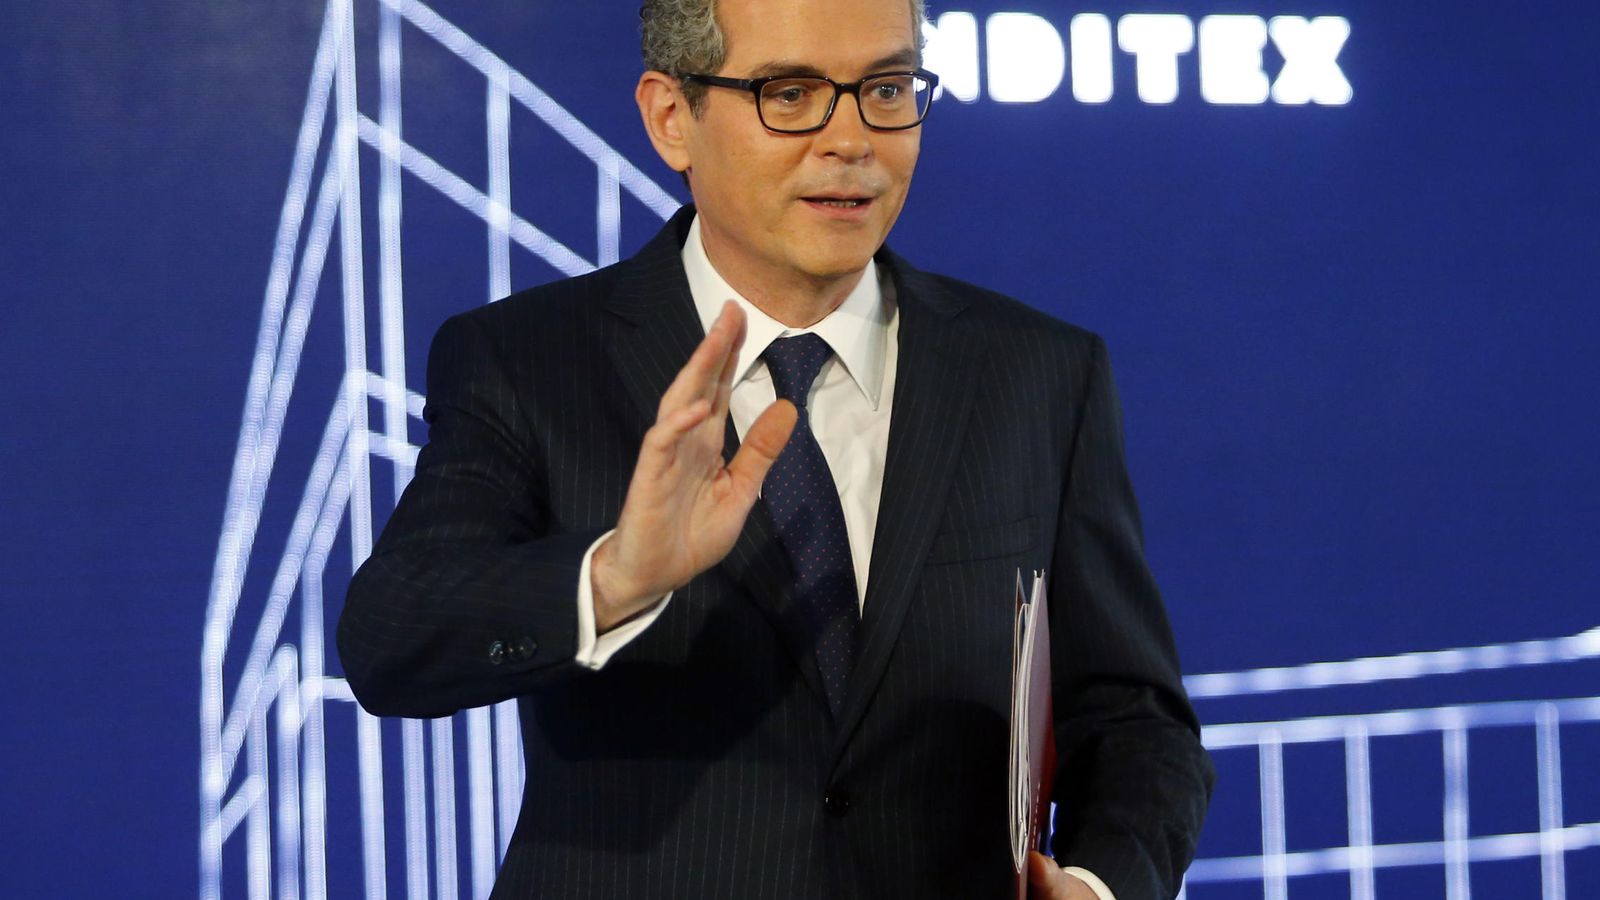 Foto: Pablo Isla, CEO de Inditex, ha sido elegido el tercer mejor presidente de empresas del mundo según un estudio. (EFE)